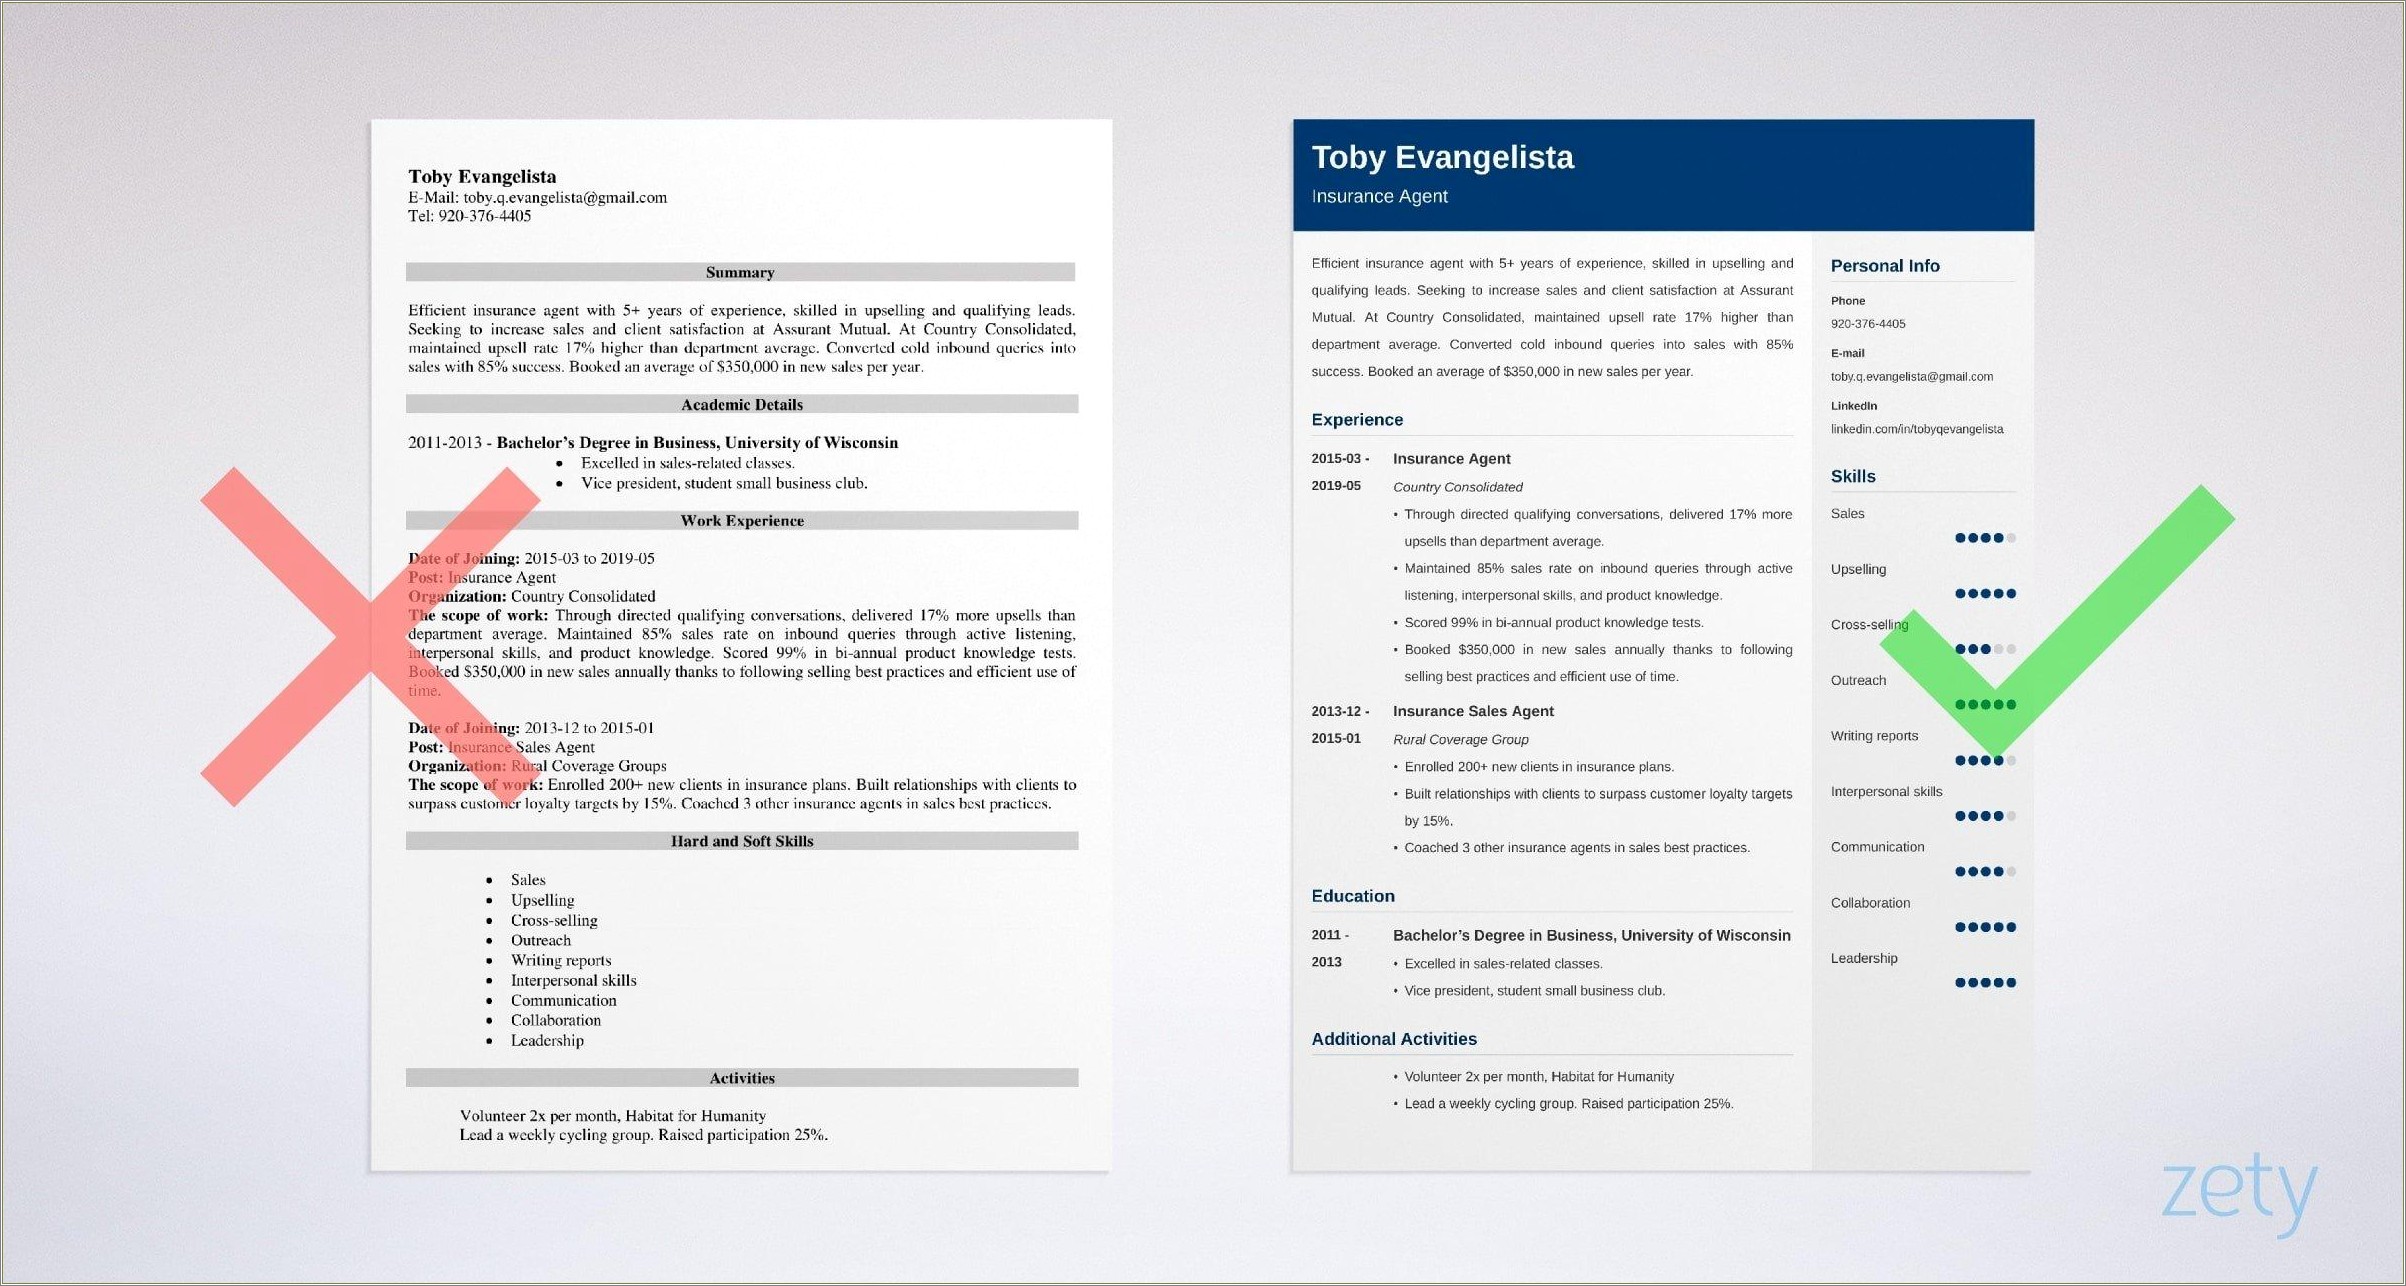 P&c Insurance Agent Work Description Resume